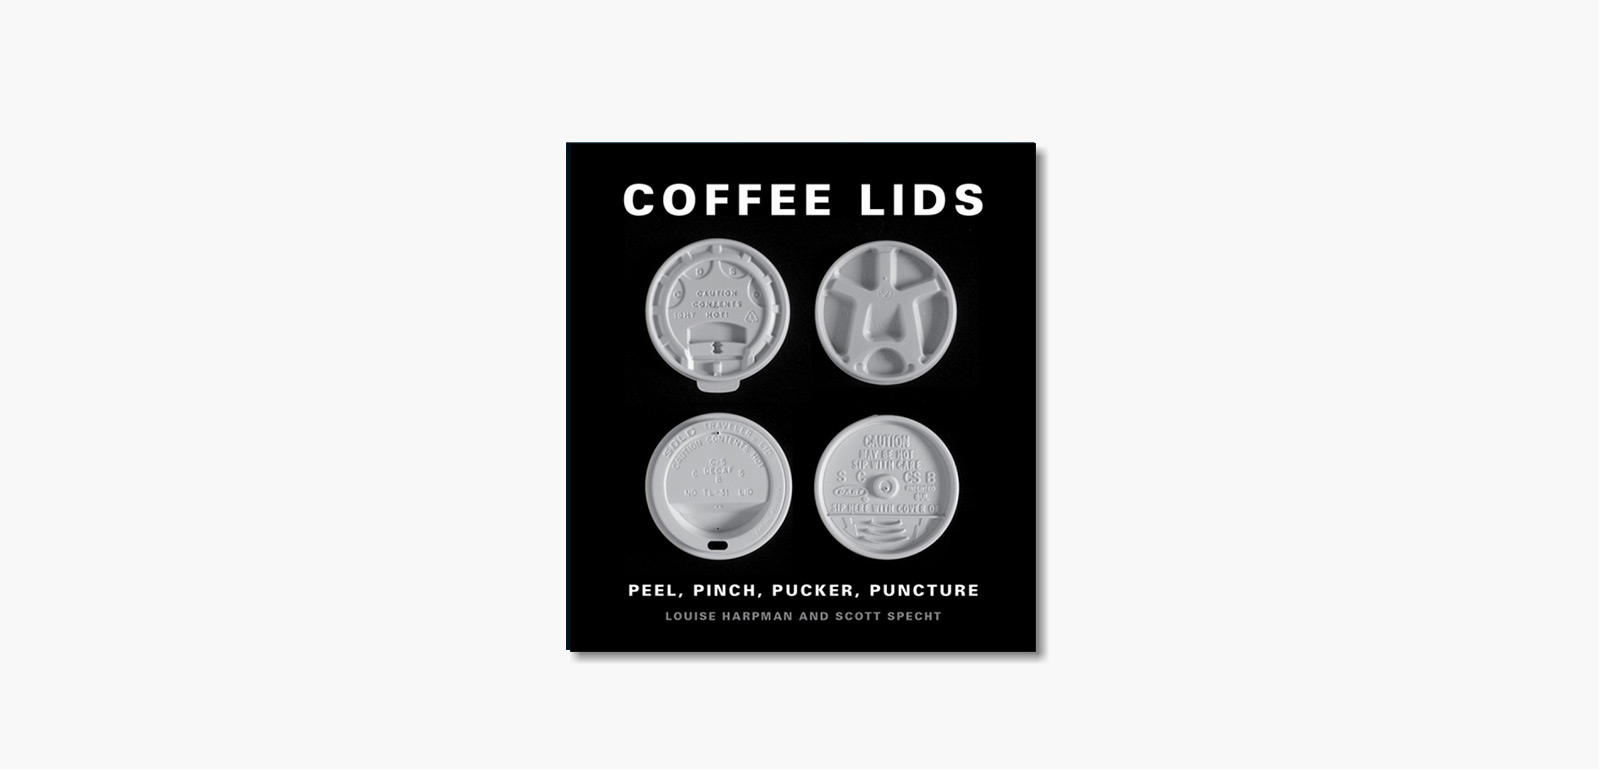 'Coffee Lids: Peel, Pinch, Pucker, Puncture' by Louise Harpman & Scott Specht